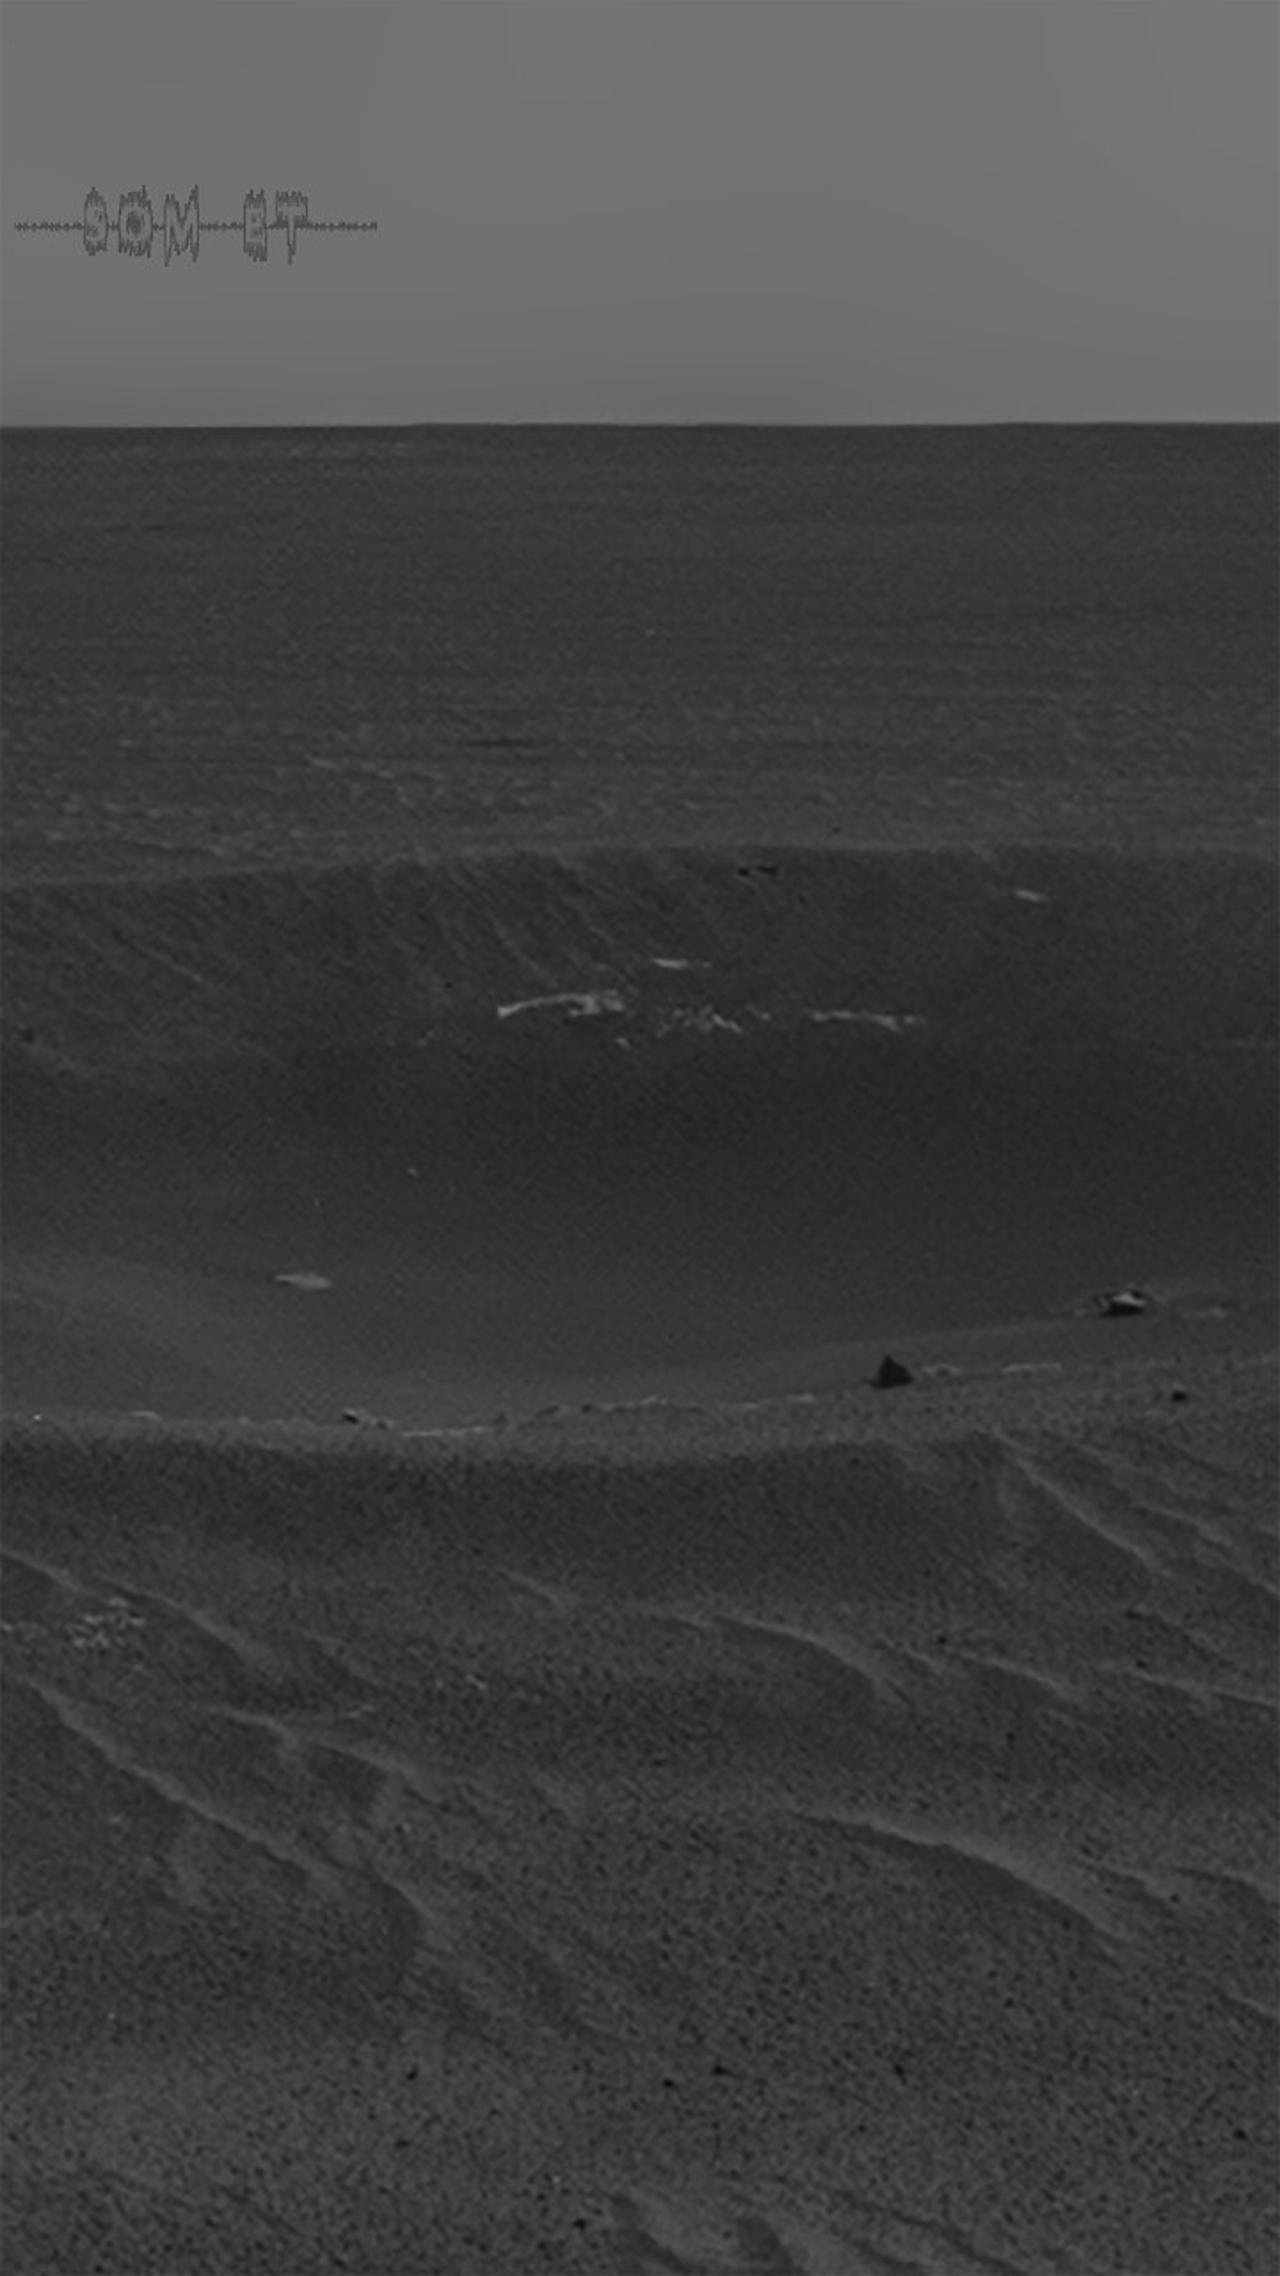 Som ET - 52 - Mars - Opportunity Sols 2410 - Yankee Clipper' Crater on Mars (Left Eye)